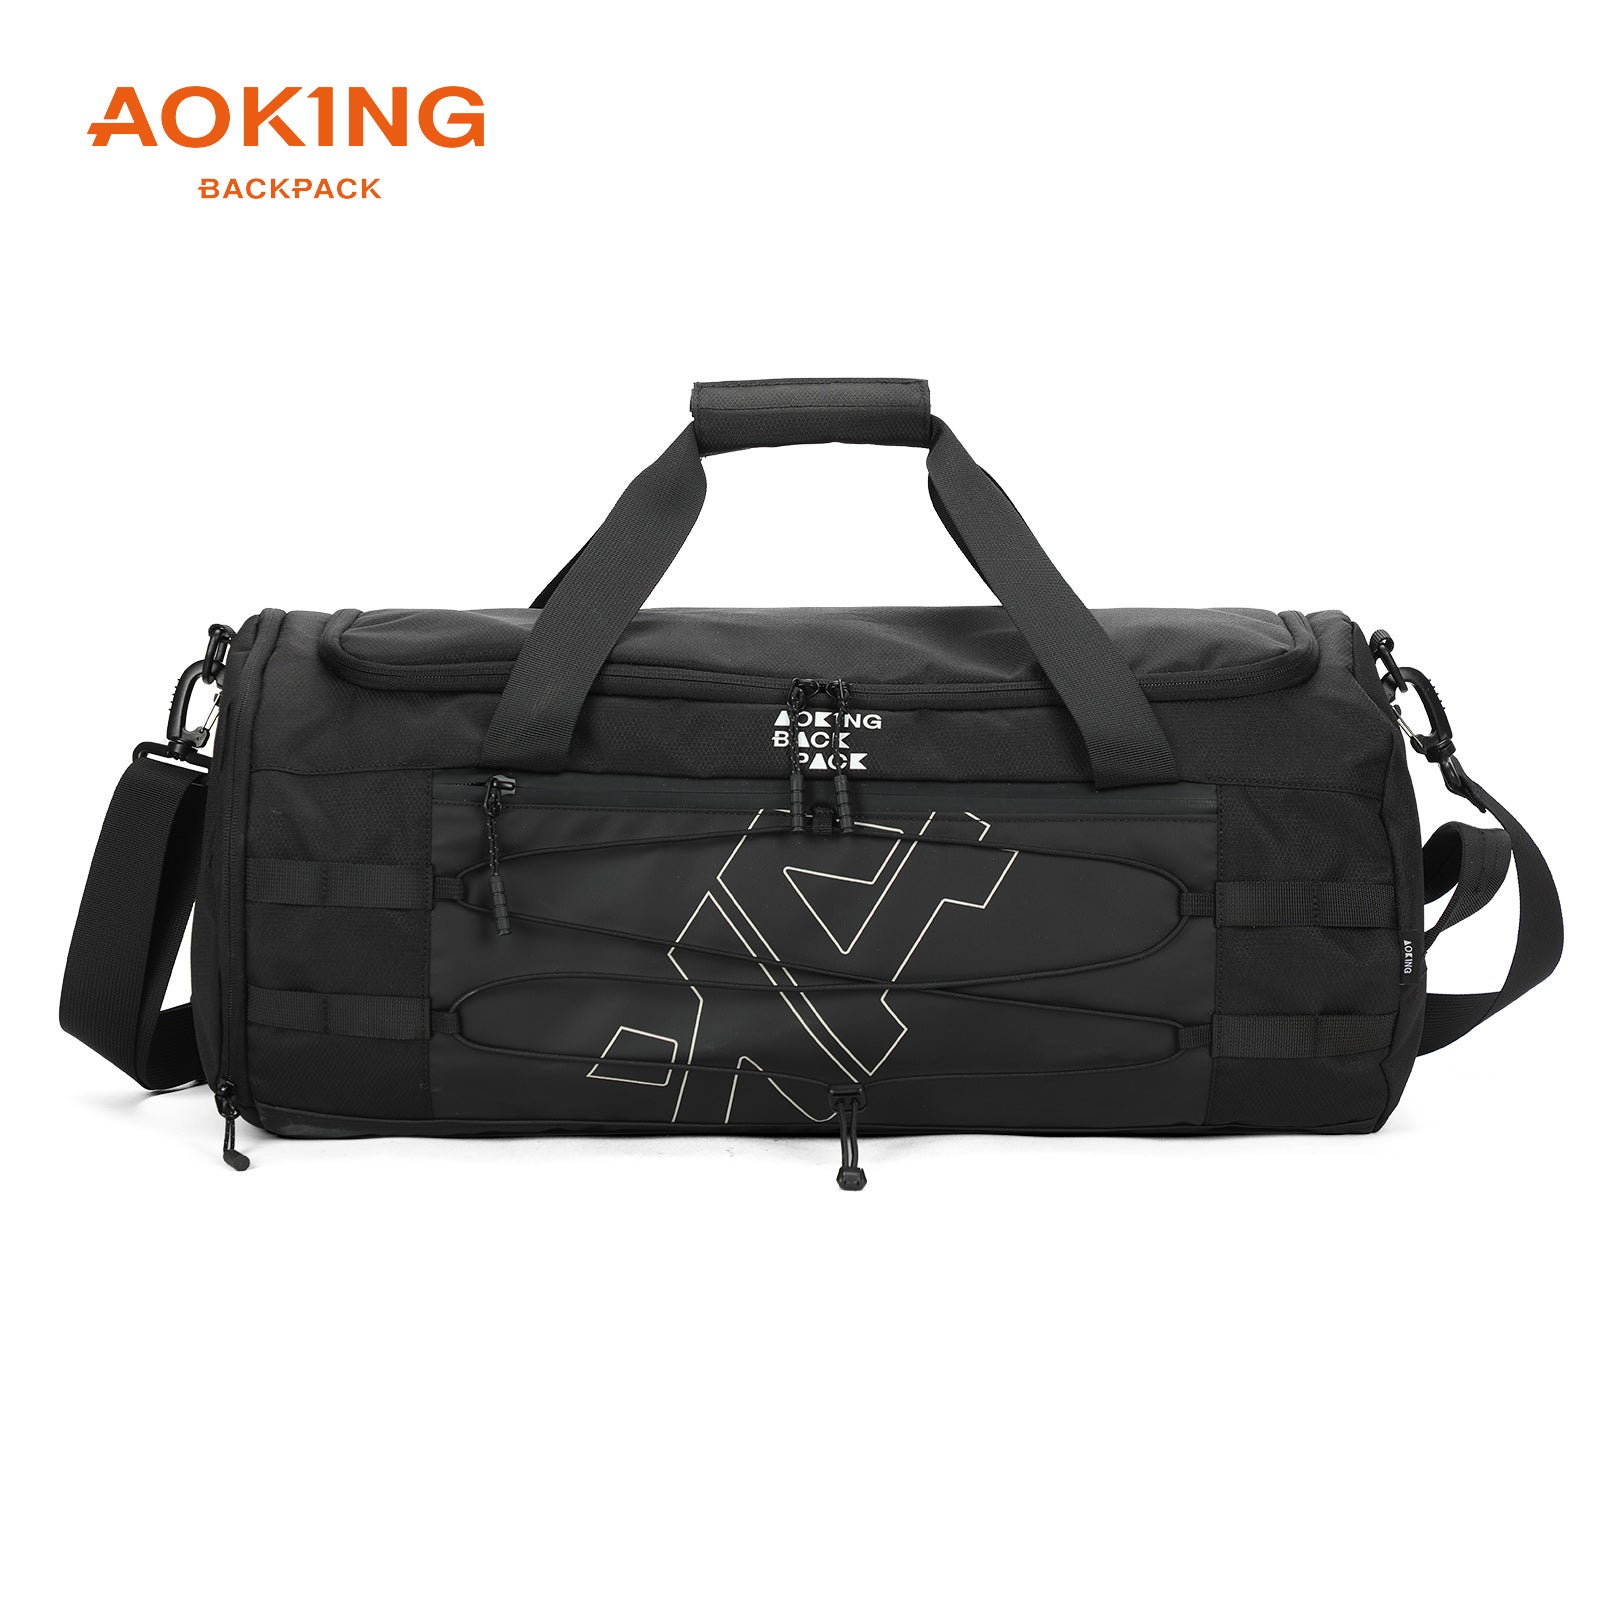 Aoking Travel Bag Large Capacity Duffel Bag XW3022